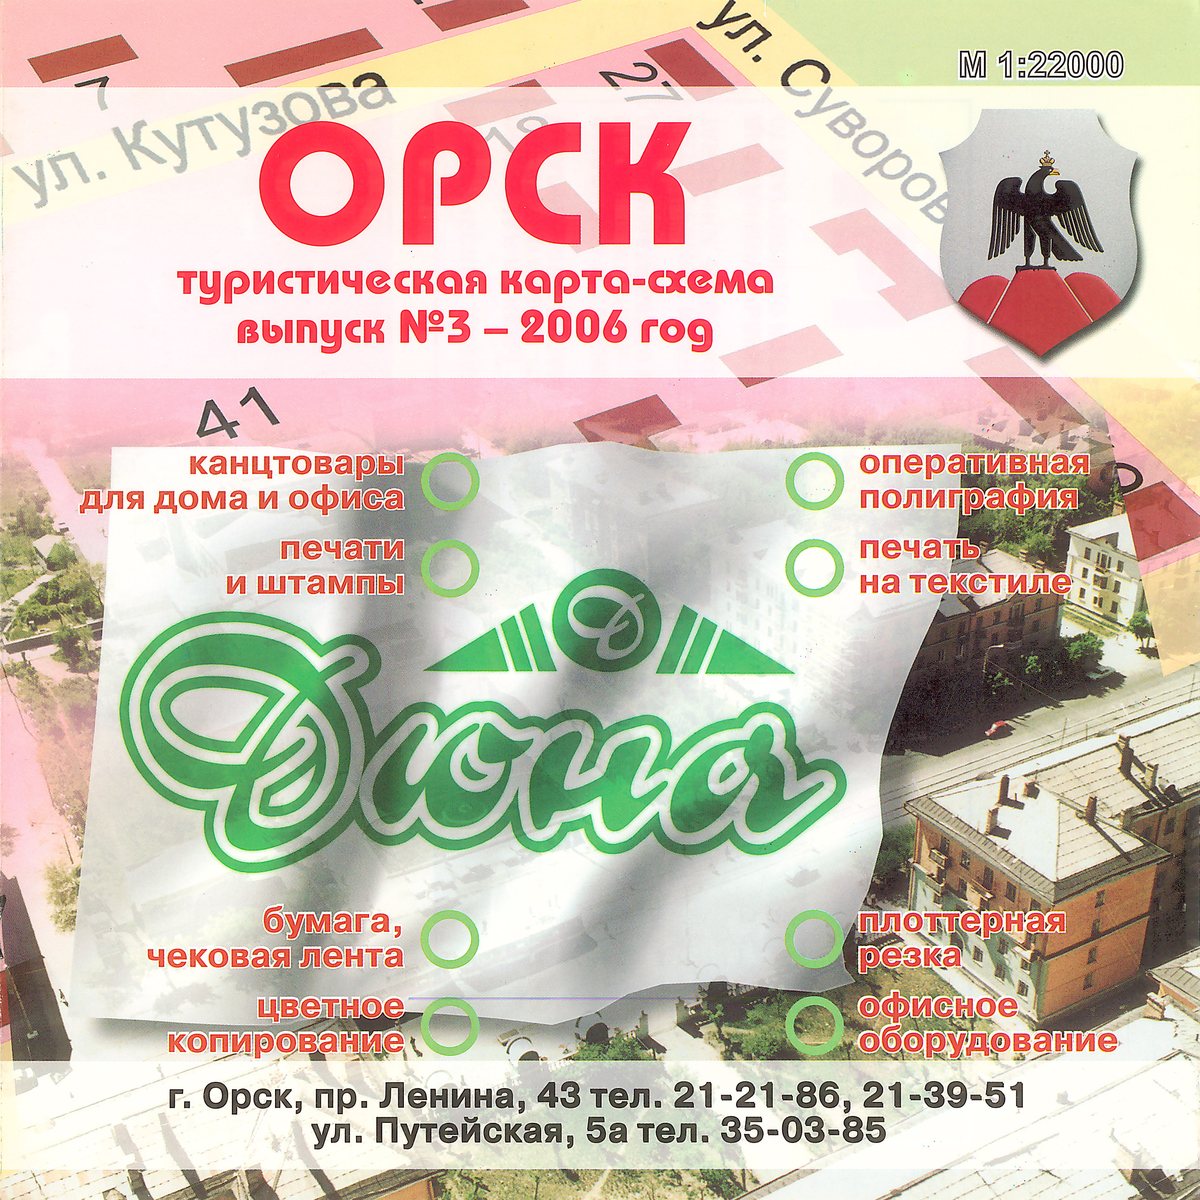 Туристическая карта-схема города Орска. 2006 год